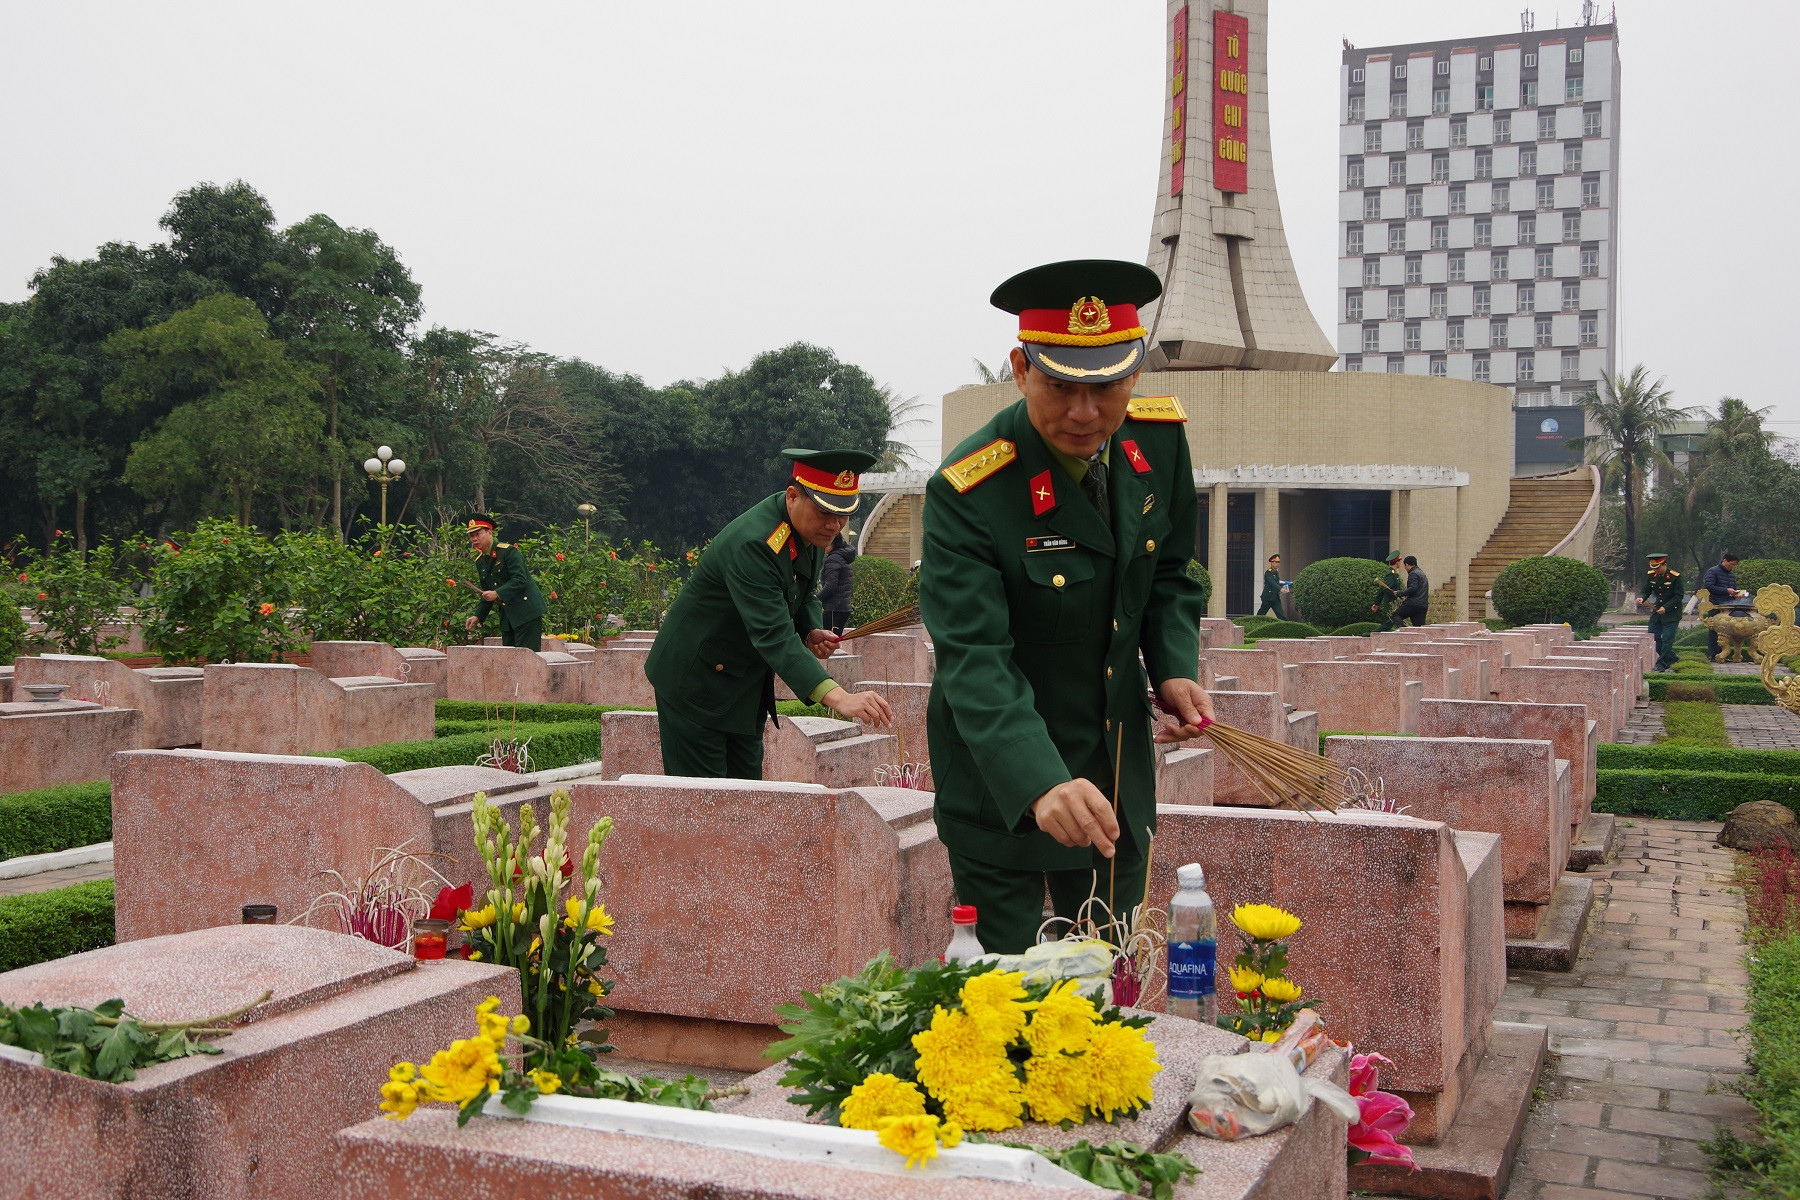 Đại tá Trần Văn Hùng - Ủy viên Ban Thường vụ Tỉnh ủy, Chỉ huy trưởng Bộ CHQS tỉnh thắp hương lên phần mộ các anh hùng, liệt sỹ tại Nghĩa trang Liệt sỹ TP Vinh. Ảnh: Phong Quang